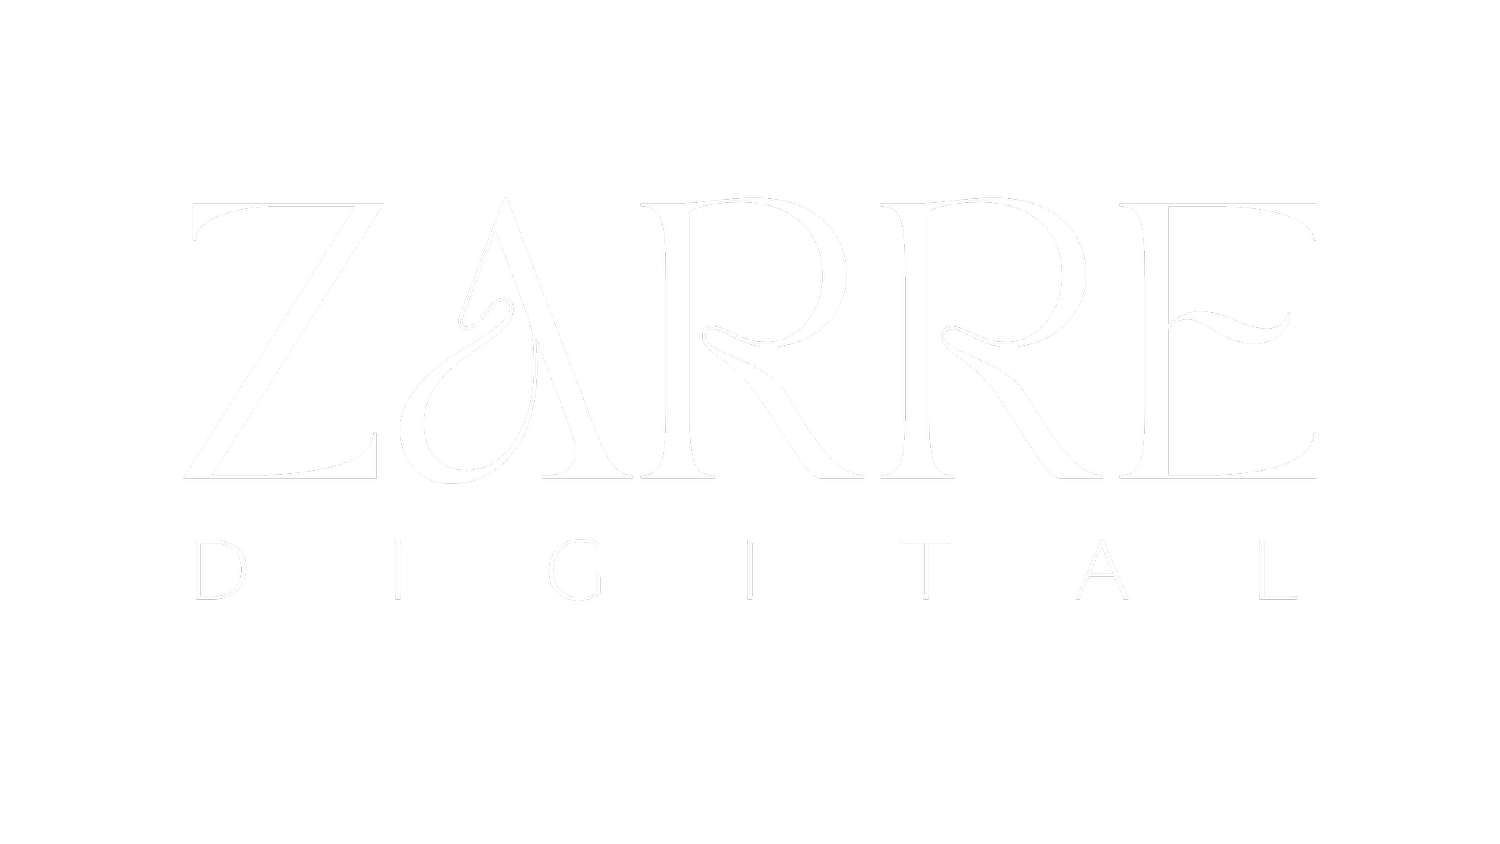 ZARRE Digital